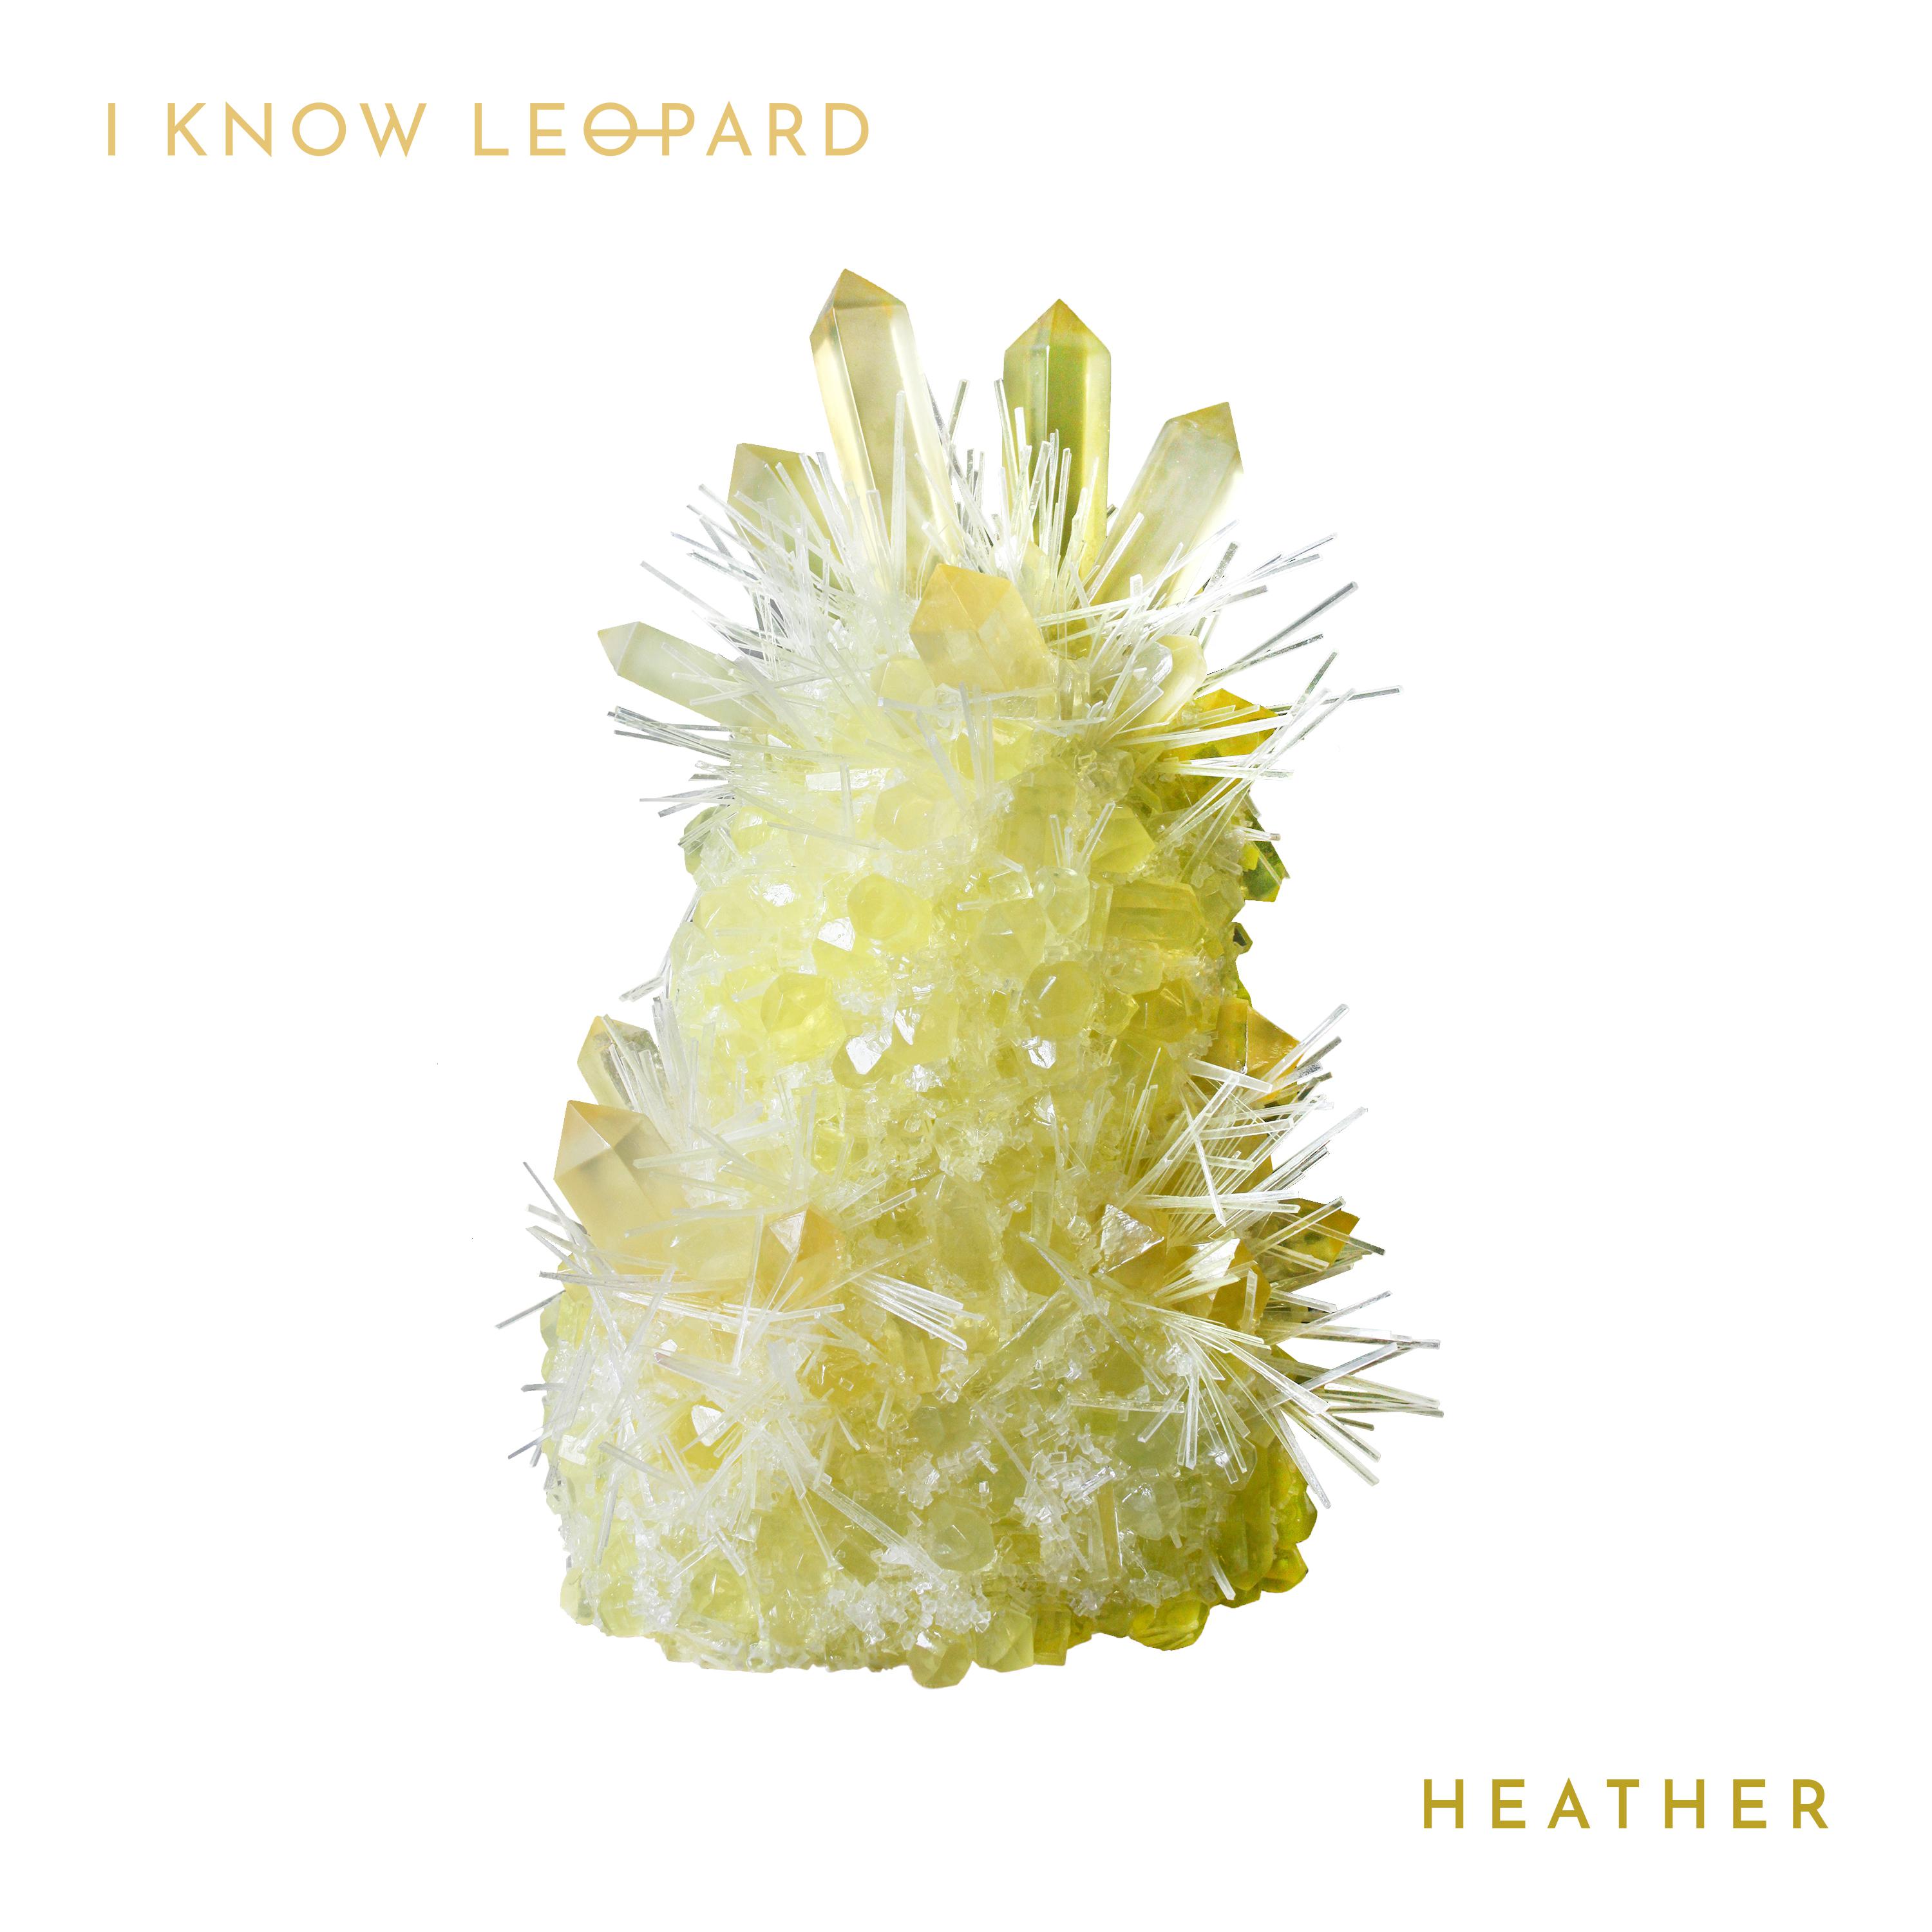 I Know Leopard - Heather